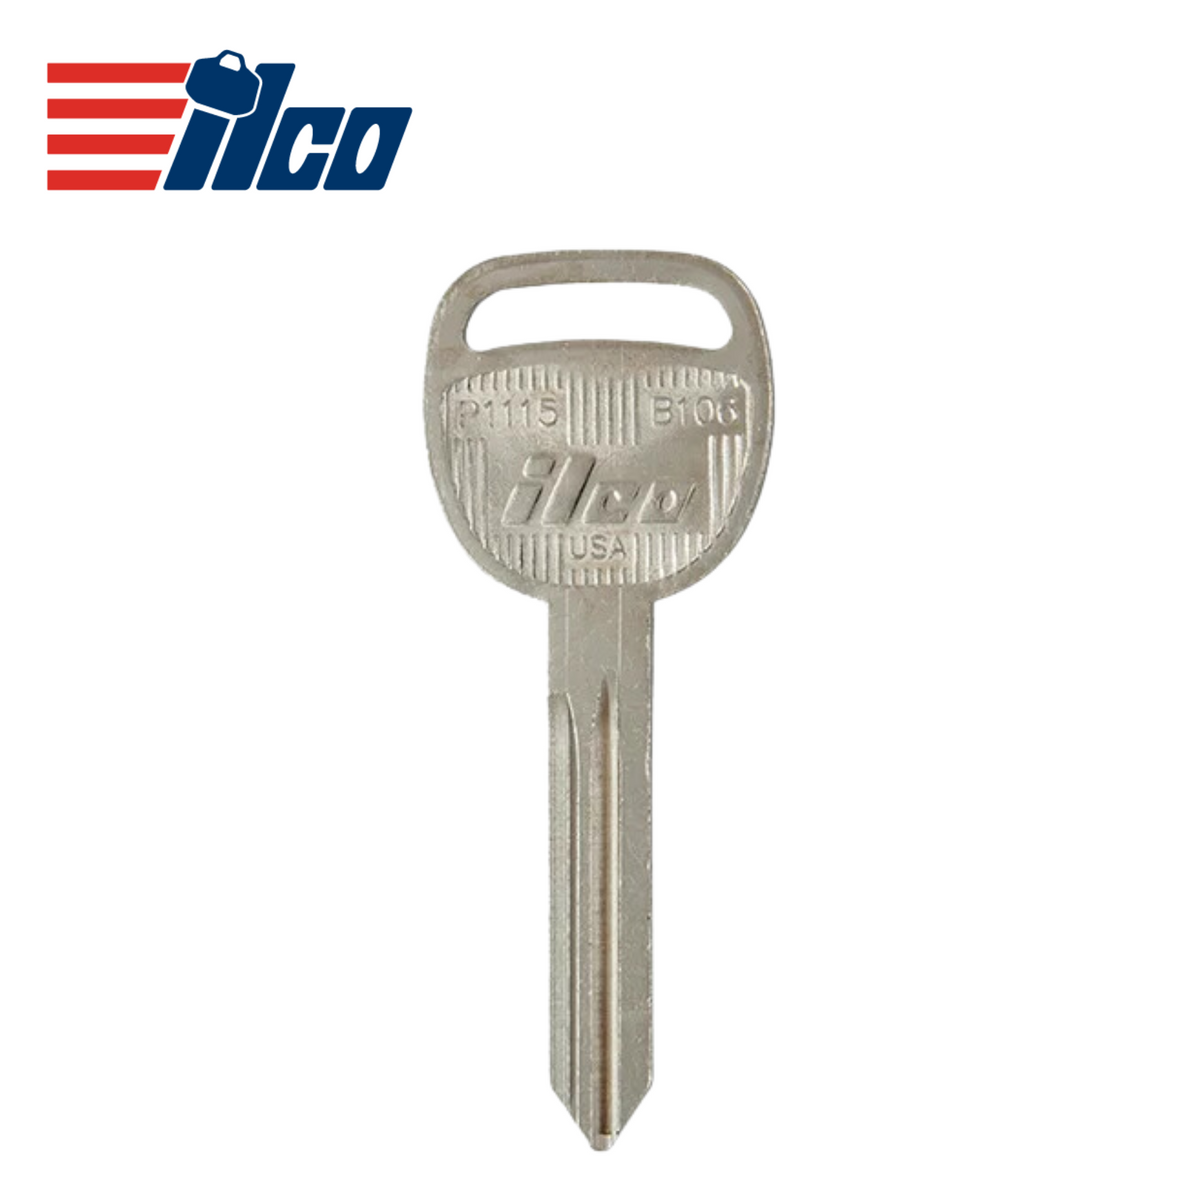 GM - ILCO 2004-2013 Metal Test Key B106/P1115 - Royal Key Supply